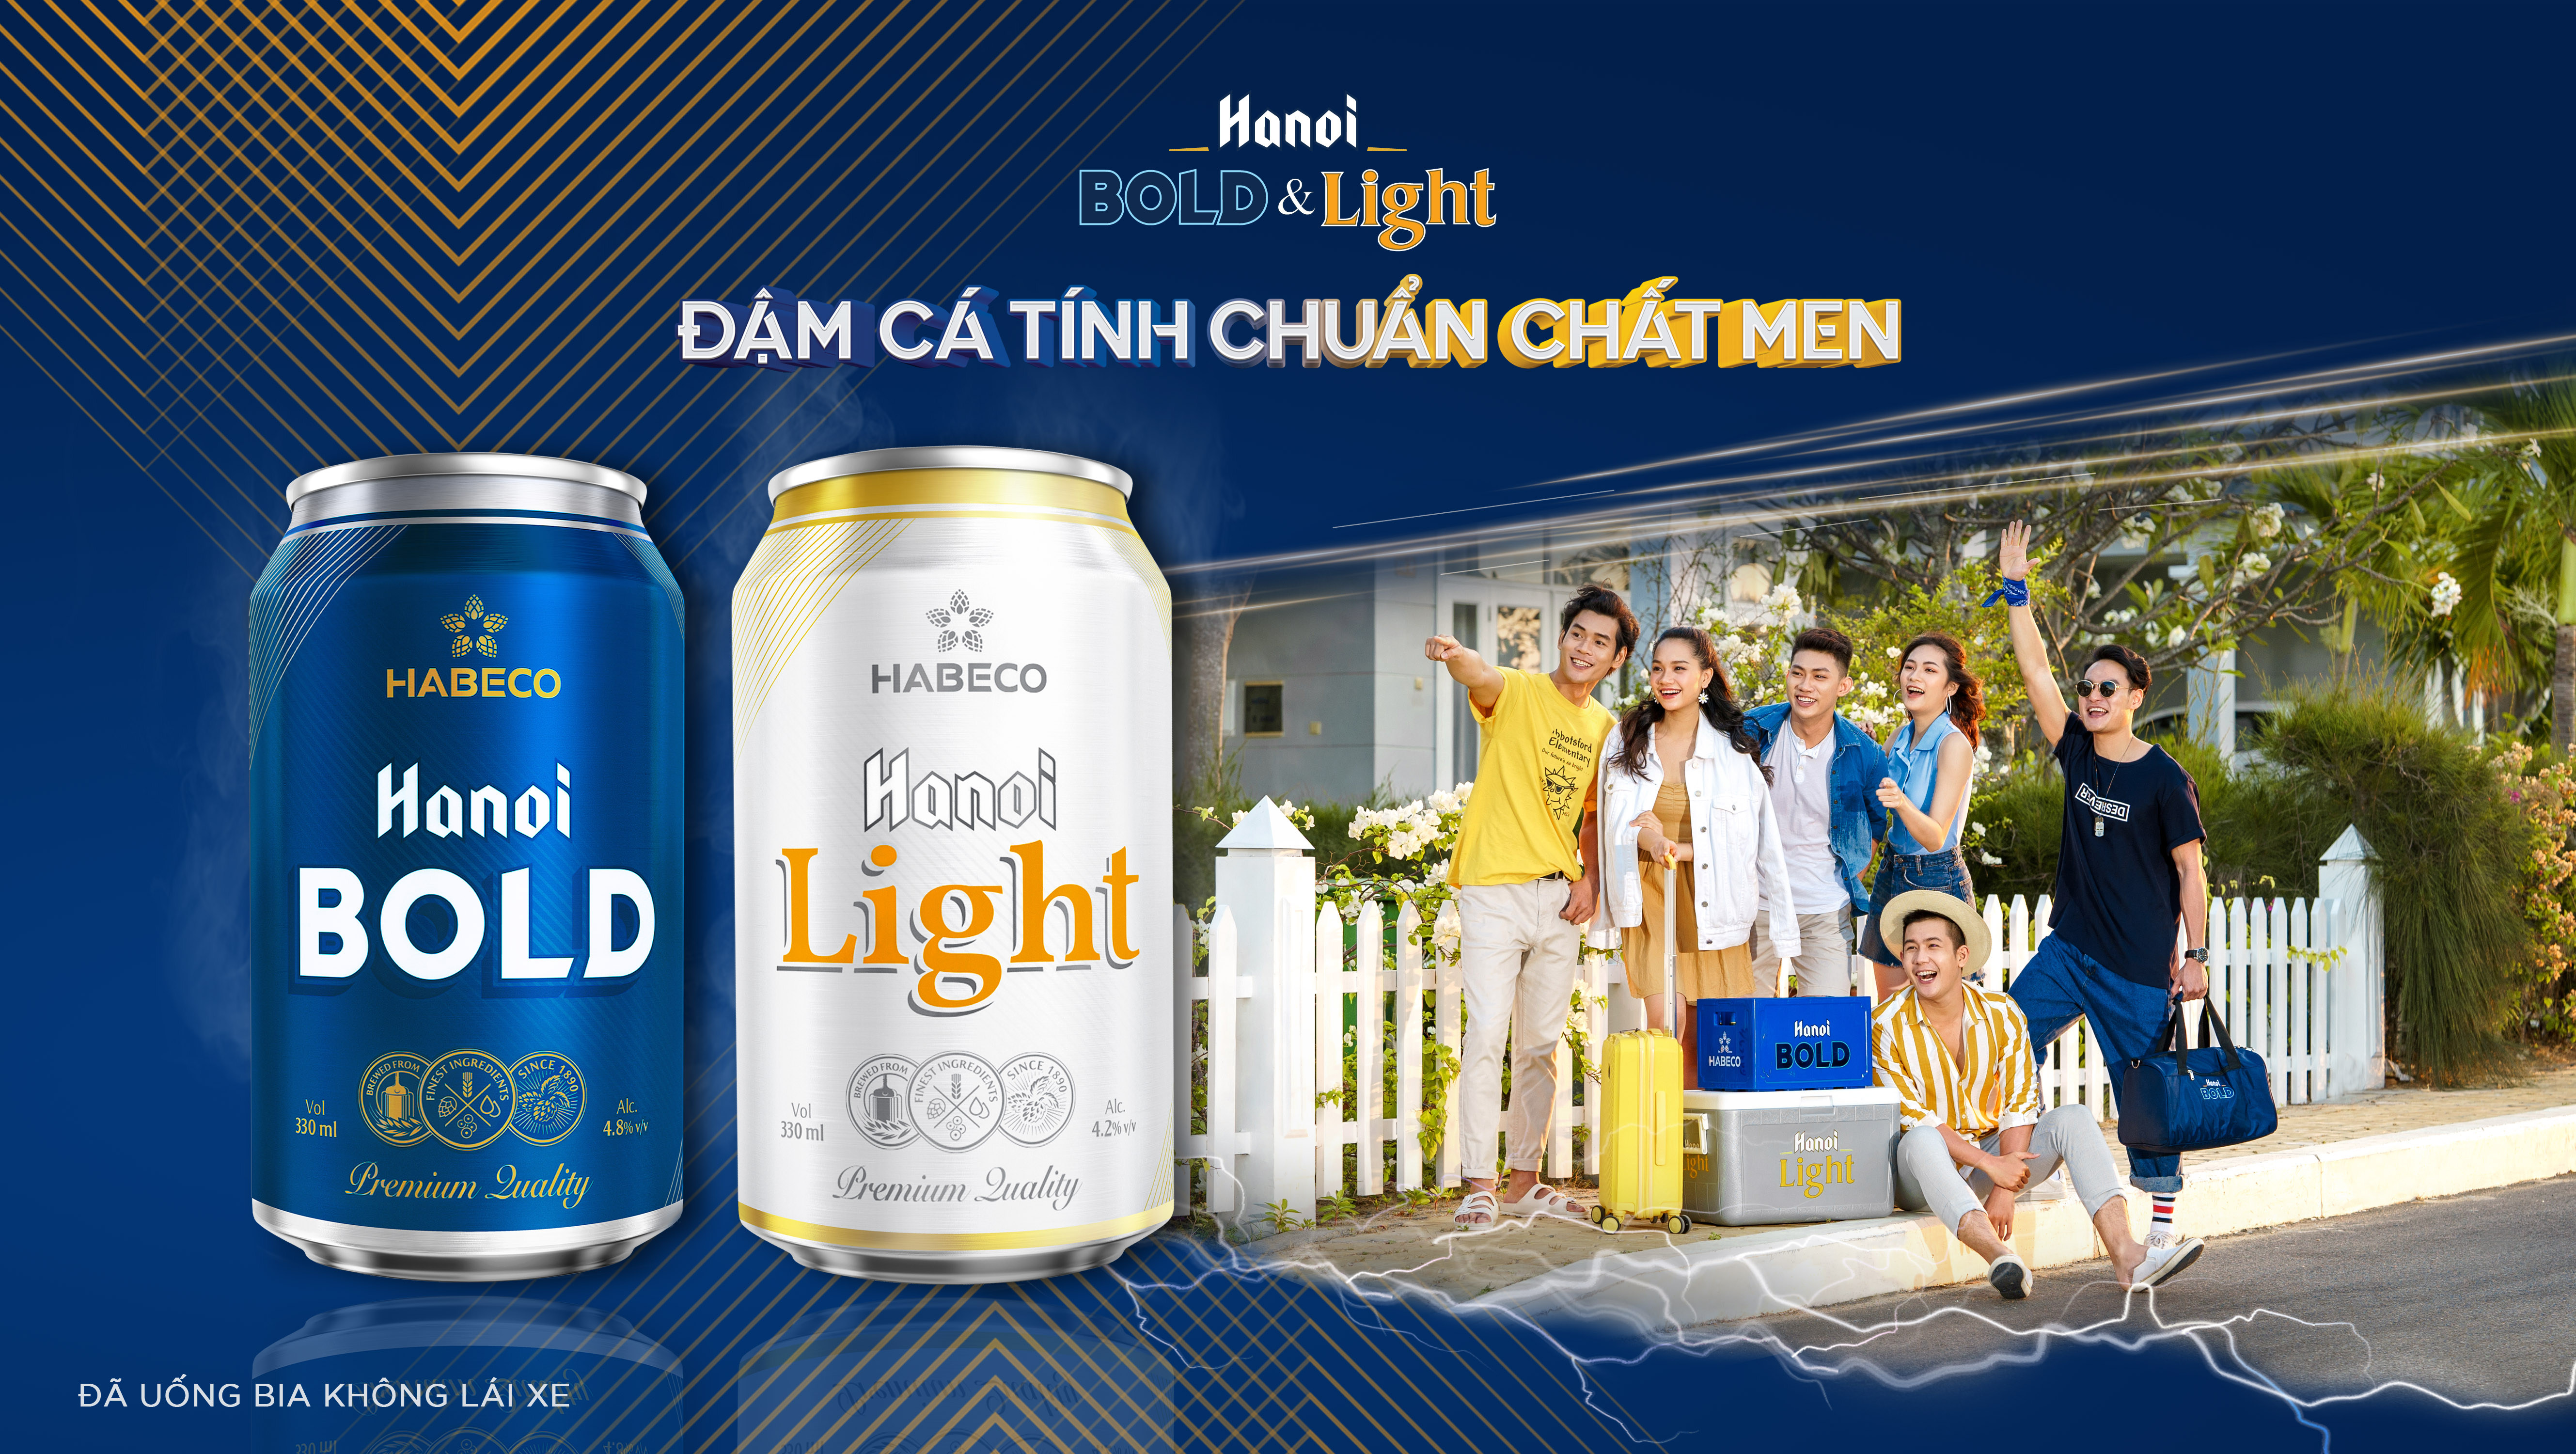 Chào hè đầy sôi động với Hanoi BOLD và Hanoi Light lon 330ml mới dành cho giới trẻ yêu trải nghiệm và khám phá